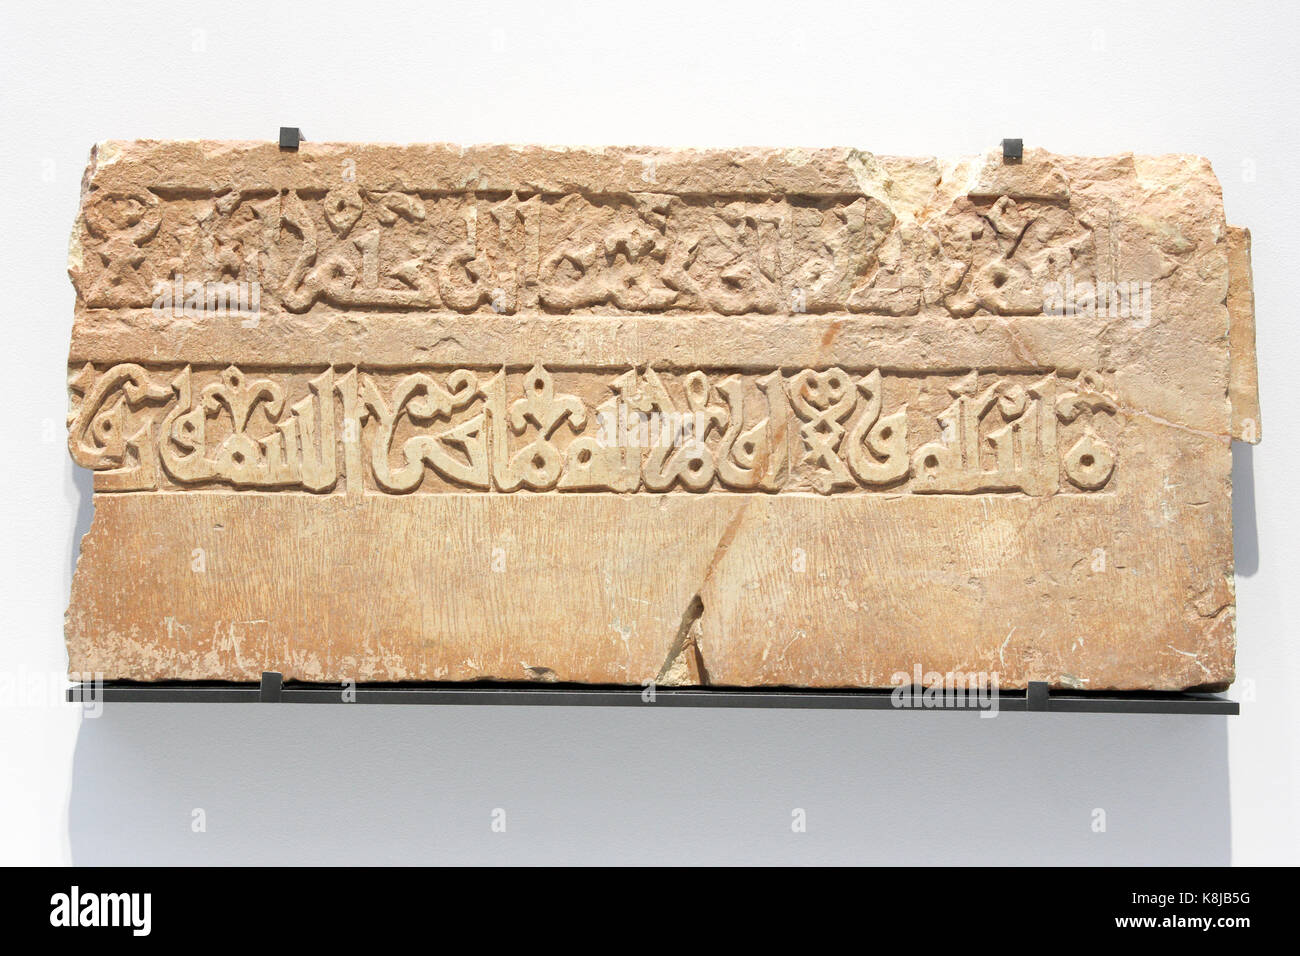 Fragment de frise architecturale : inscription Qu'ranique en script angulaire arabe. Raqqa, Syrie. Calcaire. 1100-1200 AD. Banque D'Images